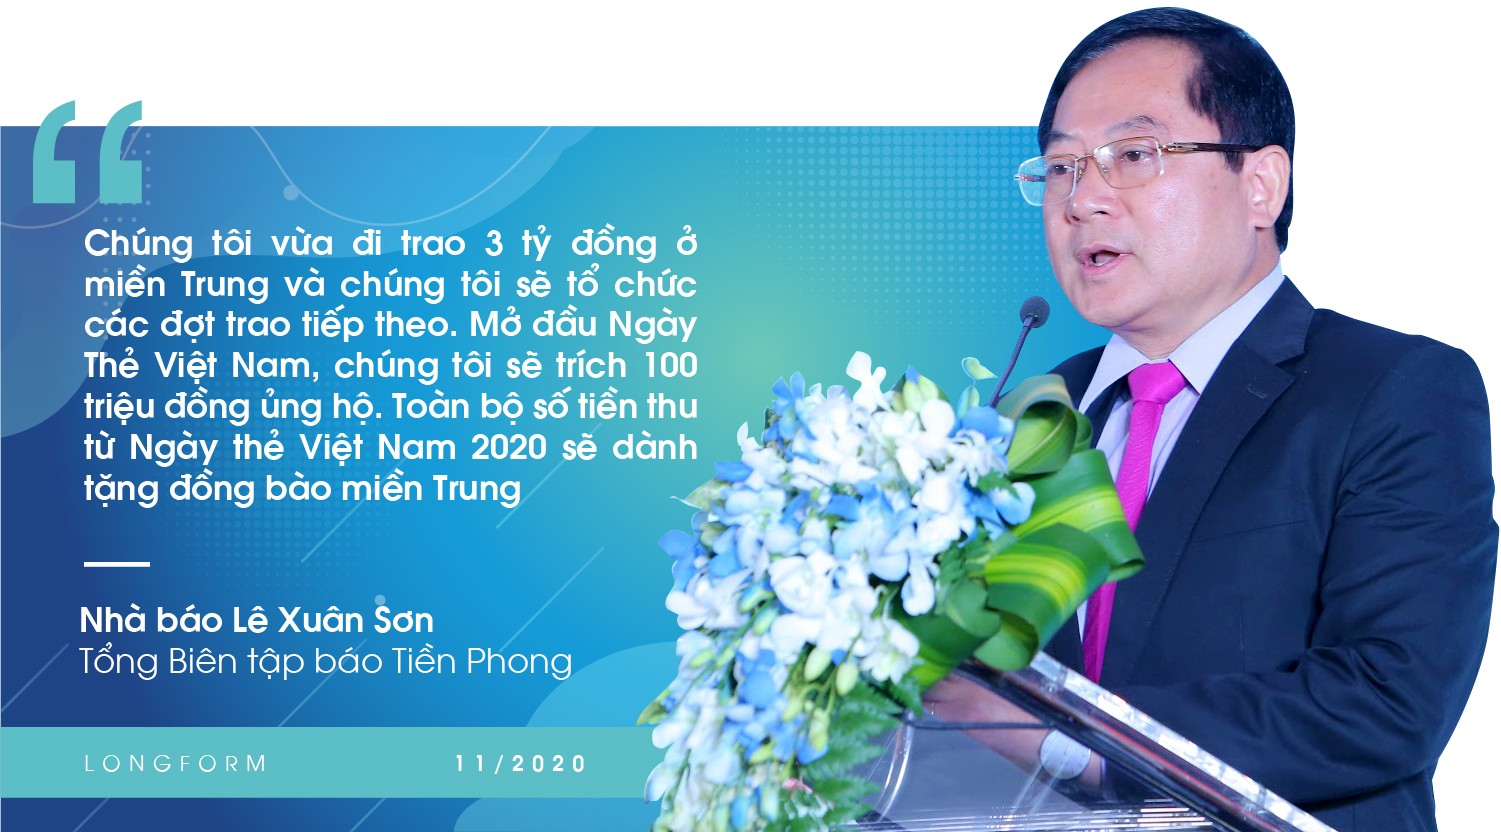 Ngày Thẻ Việt Nam 2020 - Thúc đẩy việc thanh toán không dùng tiền mặt ảnh 2